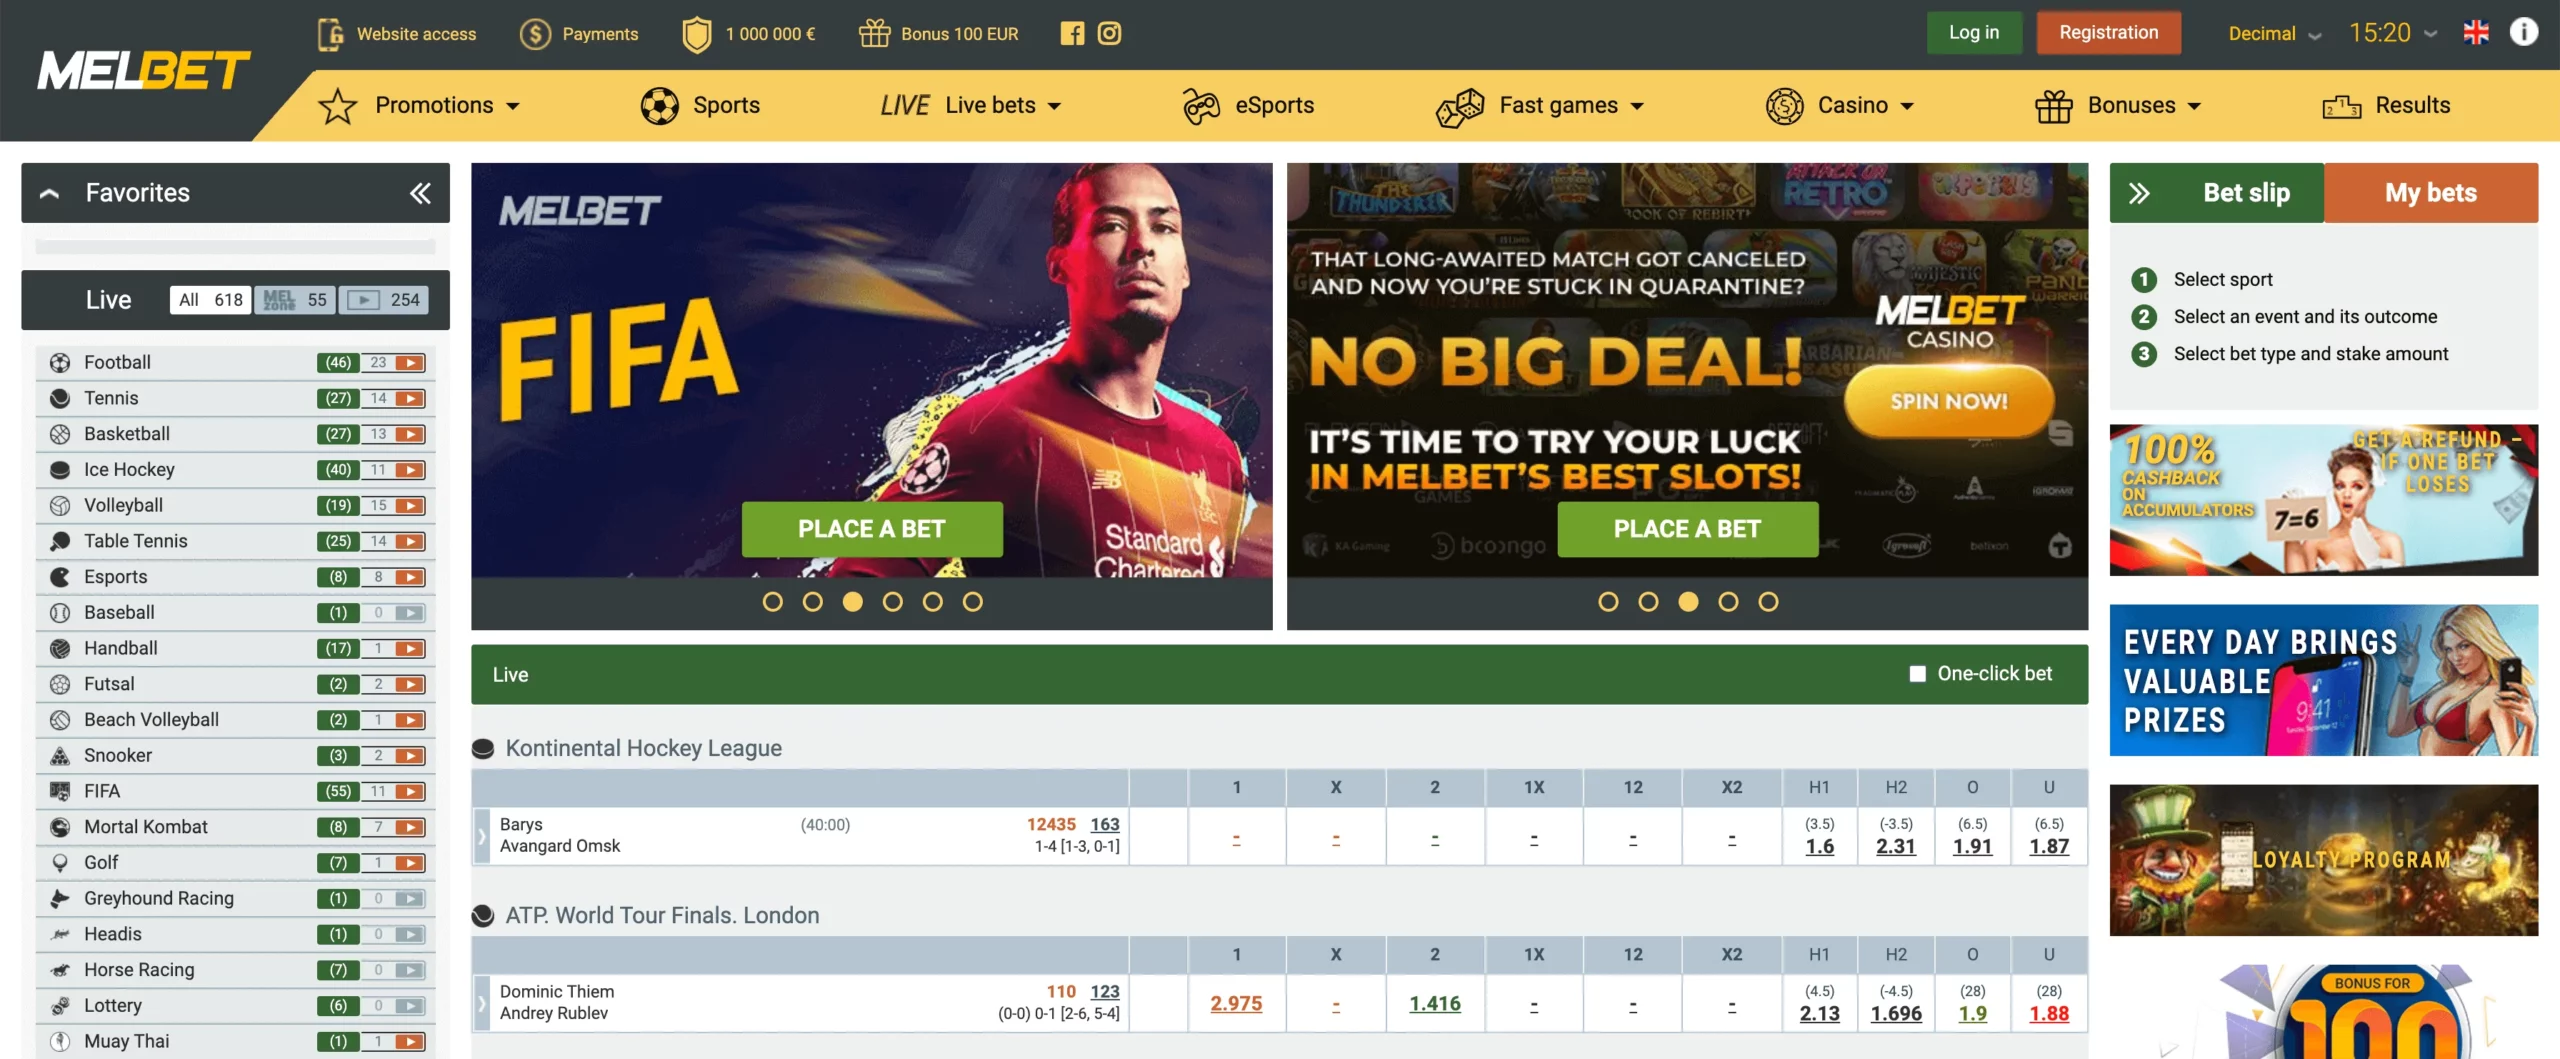 Melbet India - Online Casino